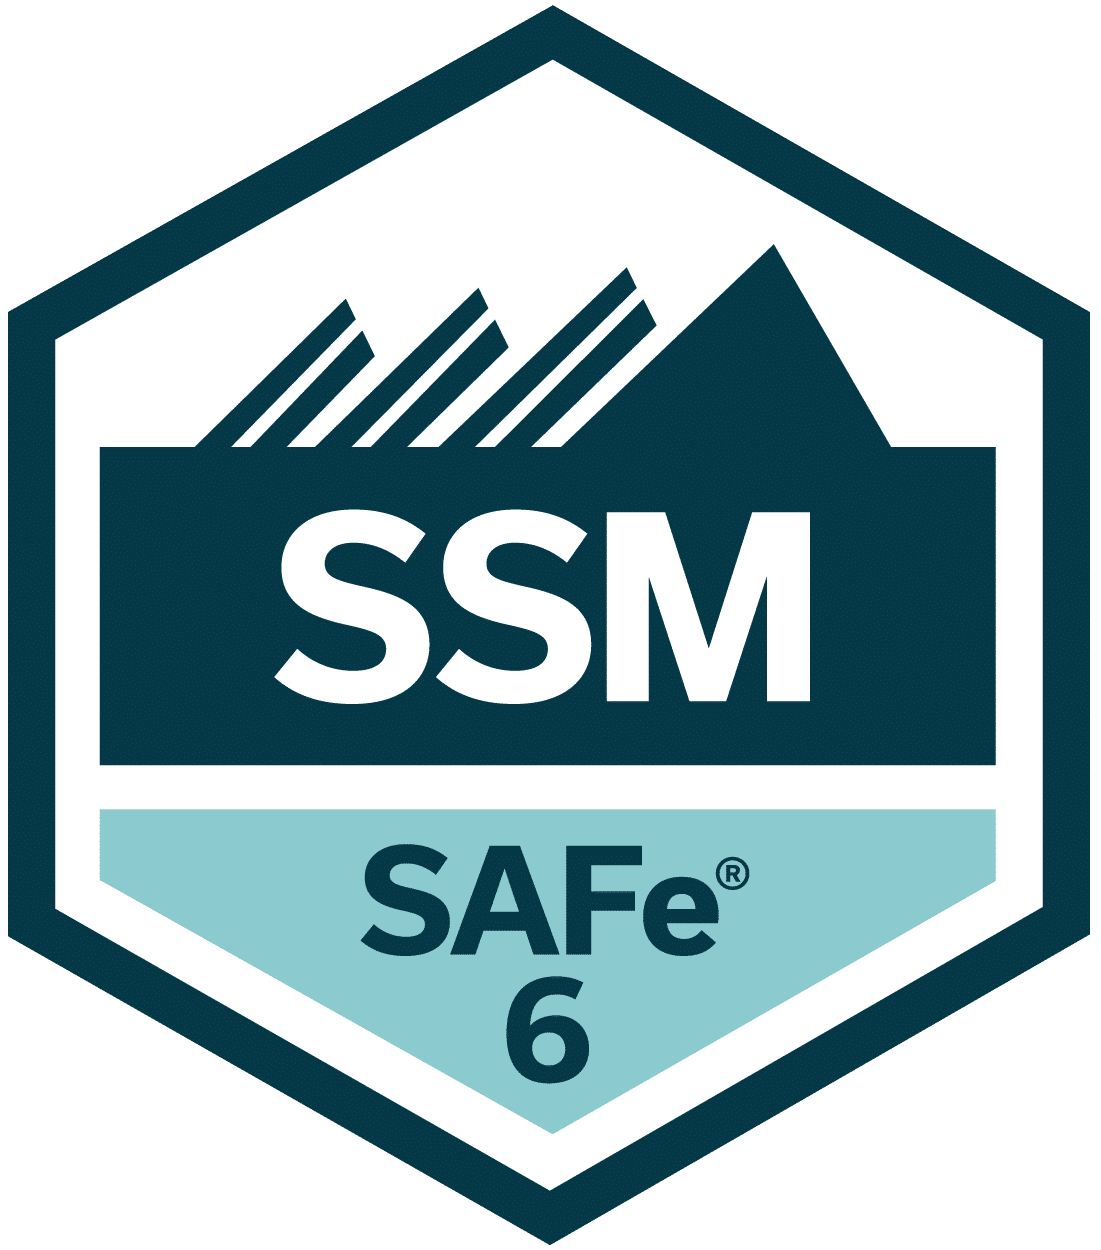 SAFe 6 SSM badge